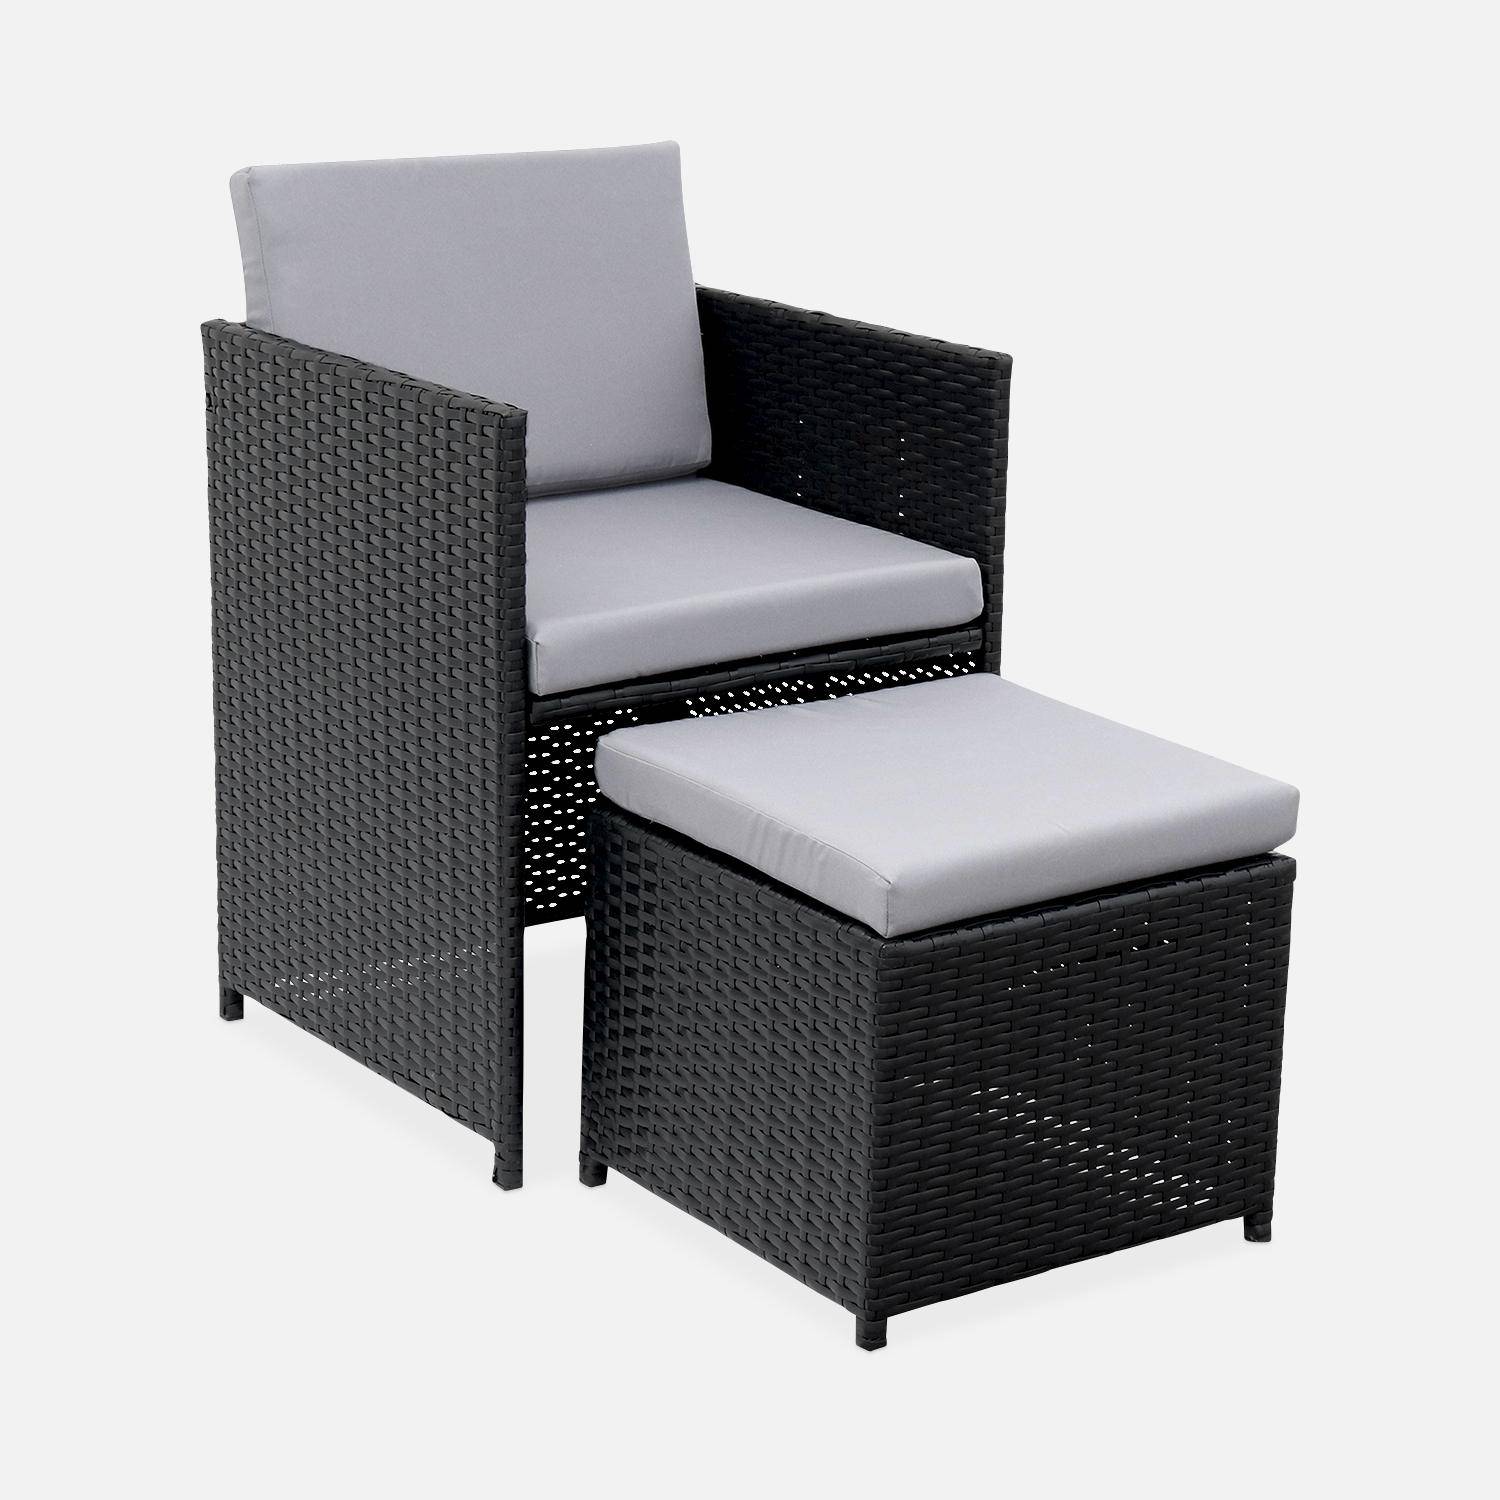 Conjunto de muebles de jardín 6-10 plazas - Fregadero - Color negro, cojines grises, mesa incorporada. Photo3